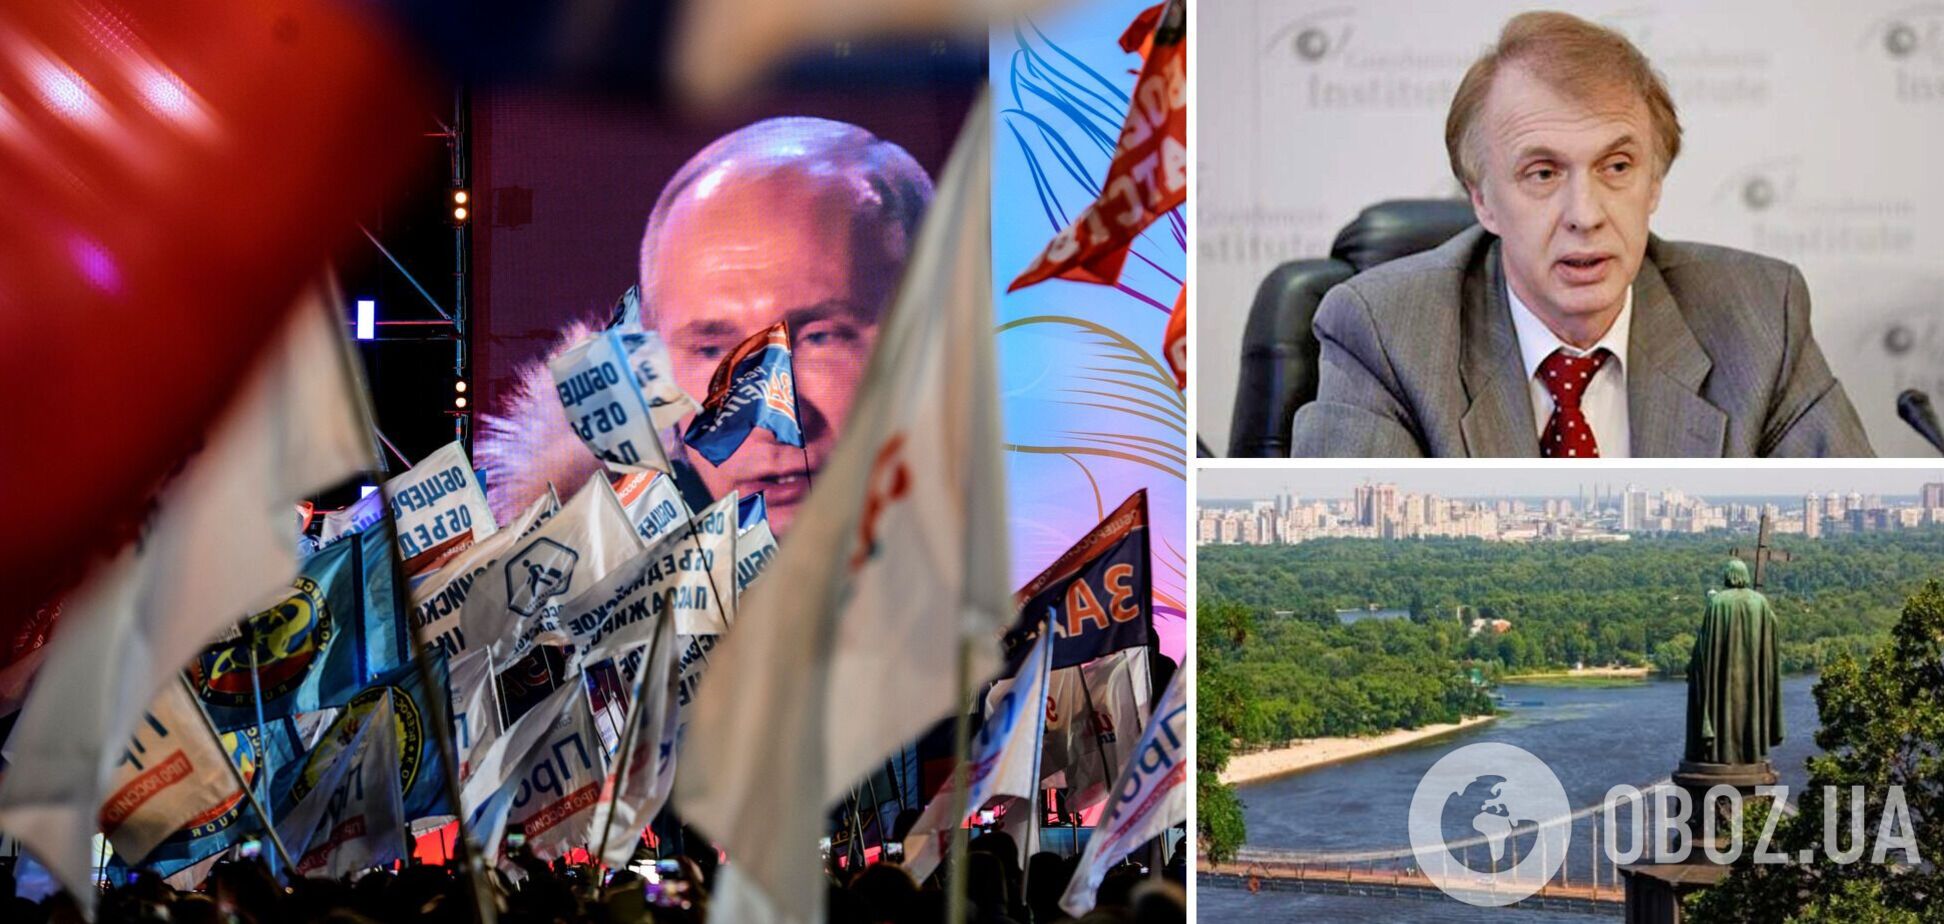 Огрызко: Украина угрожает Путину, ему нужно спасти миф об 'одном народе'. Интервью